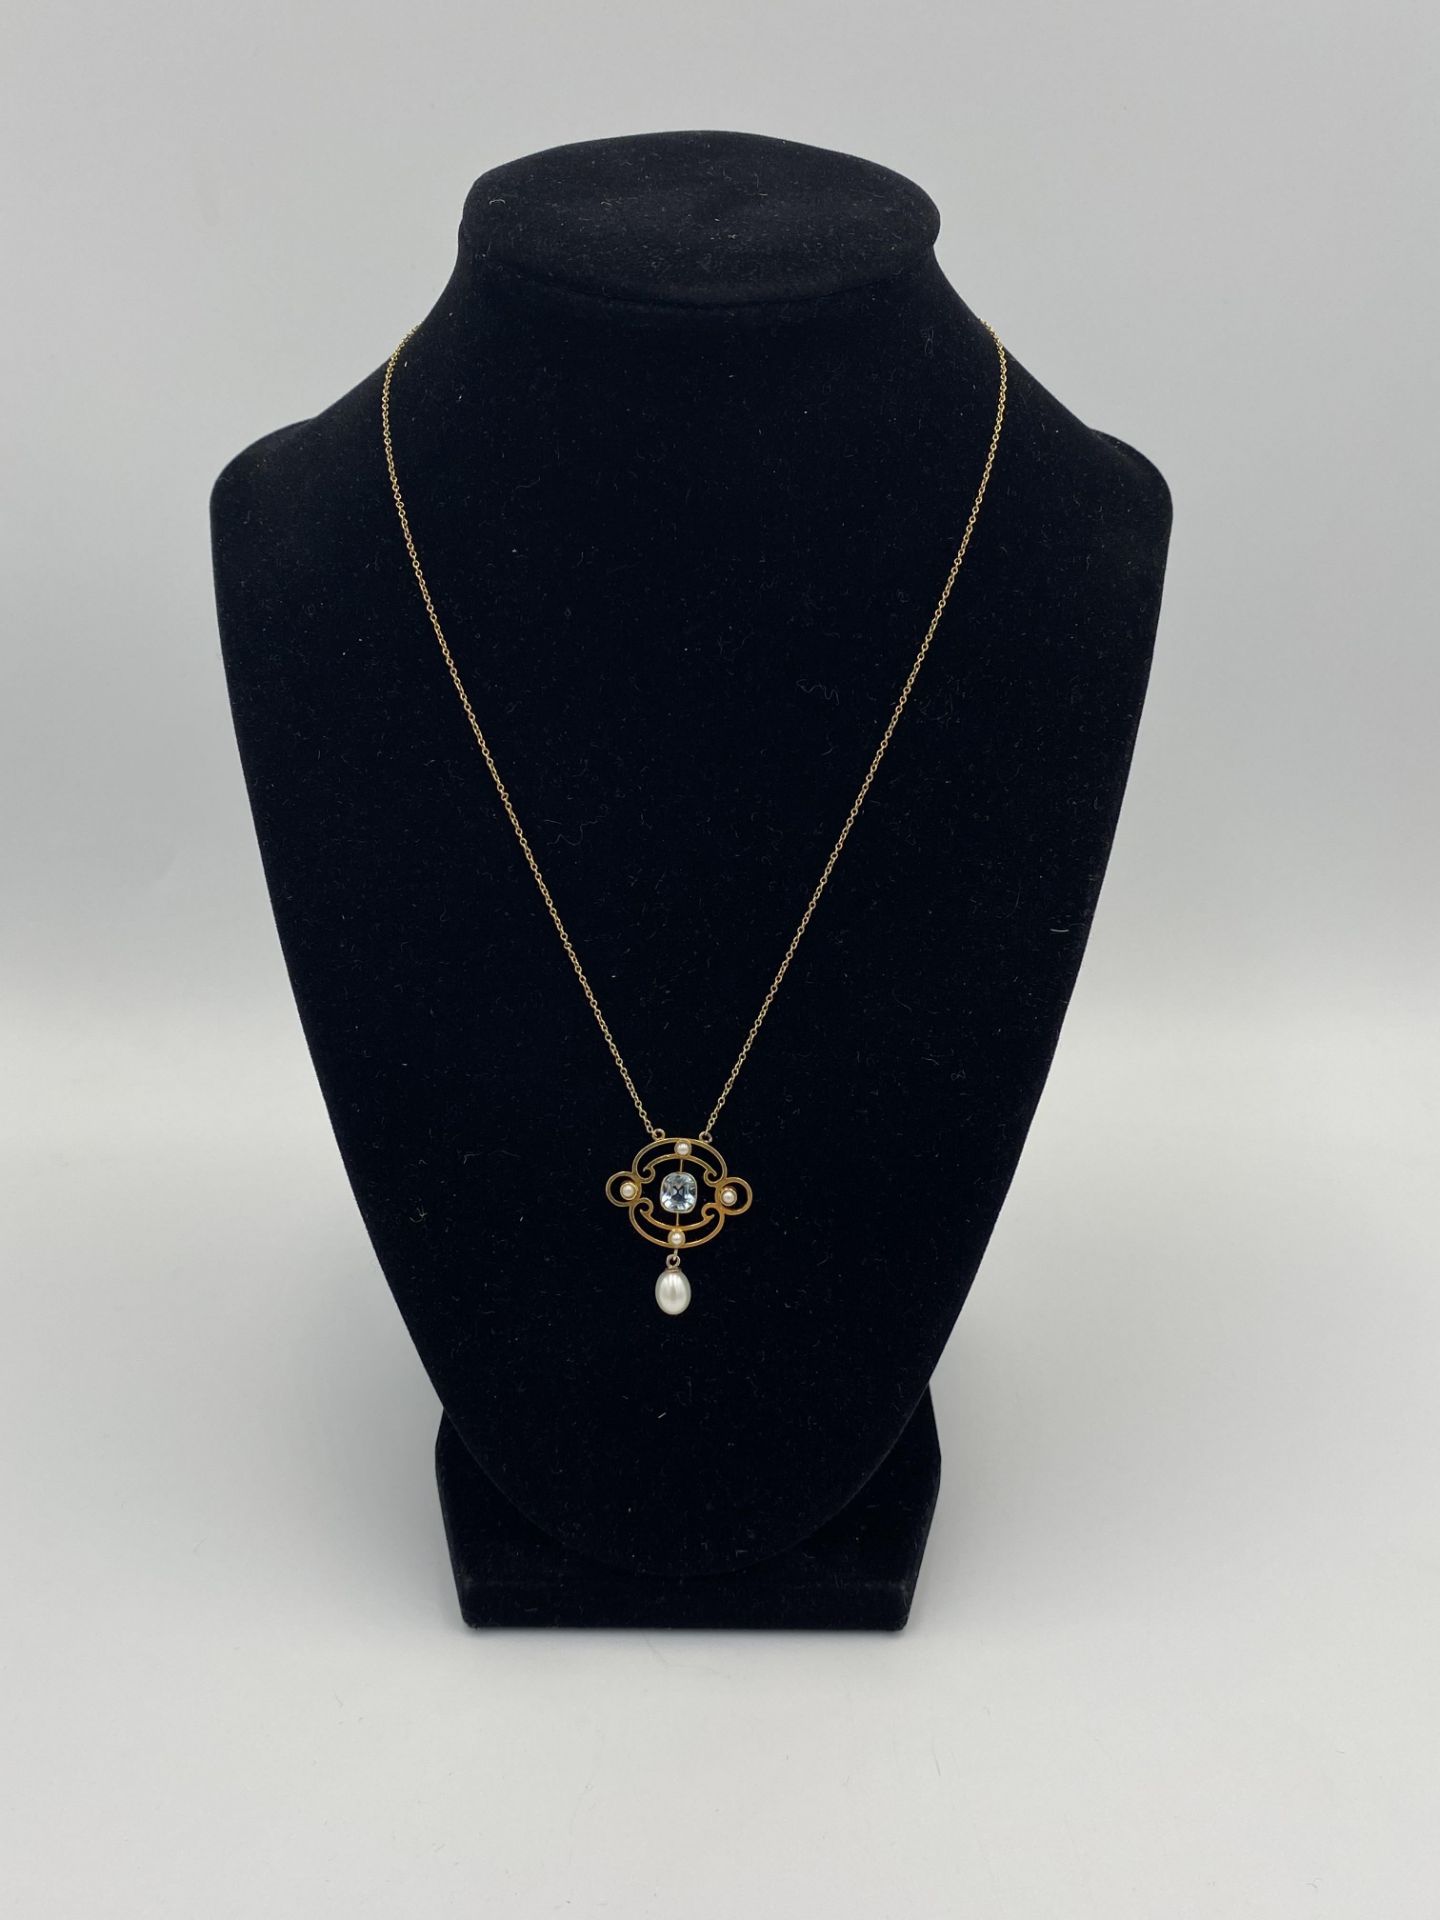 15ct gold pendant necklace - Bild 3 aus 4